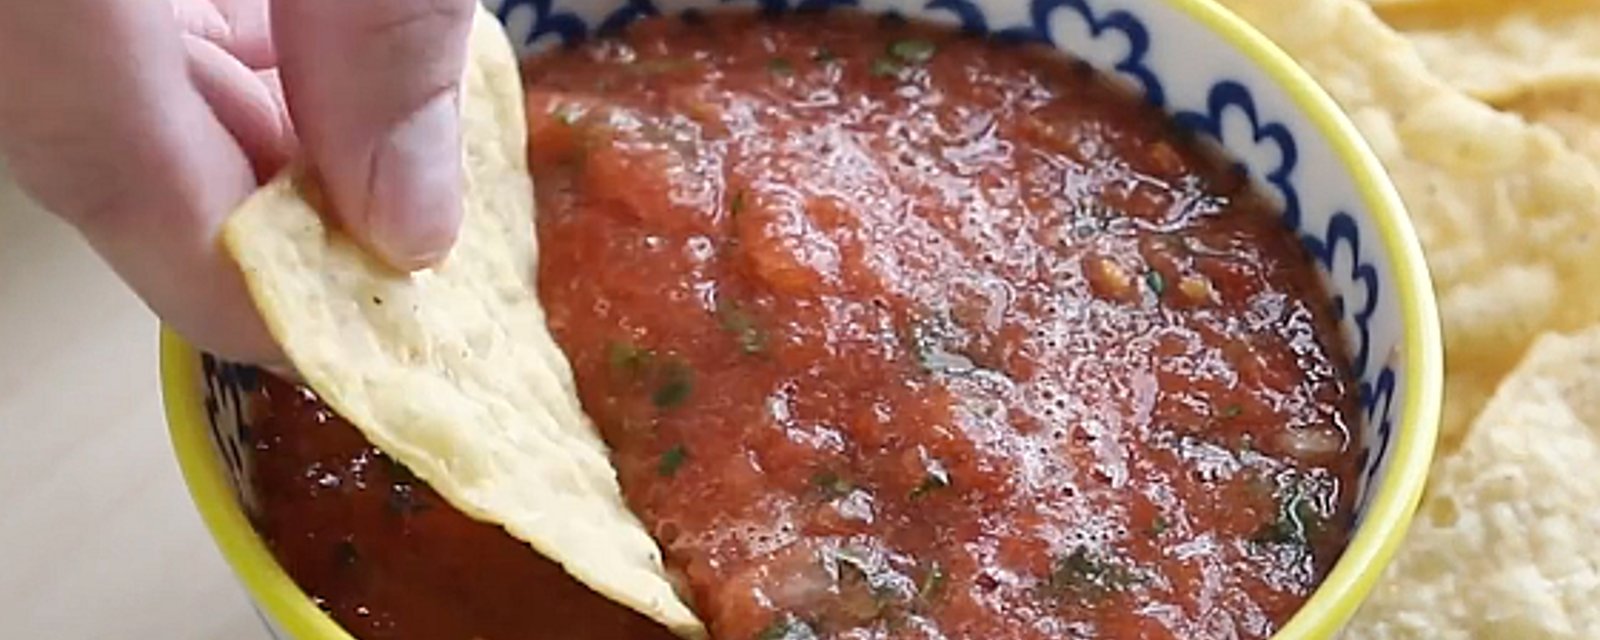 La meilleure recette de salsa maison 